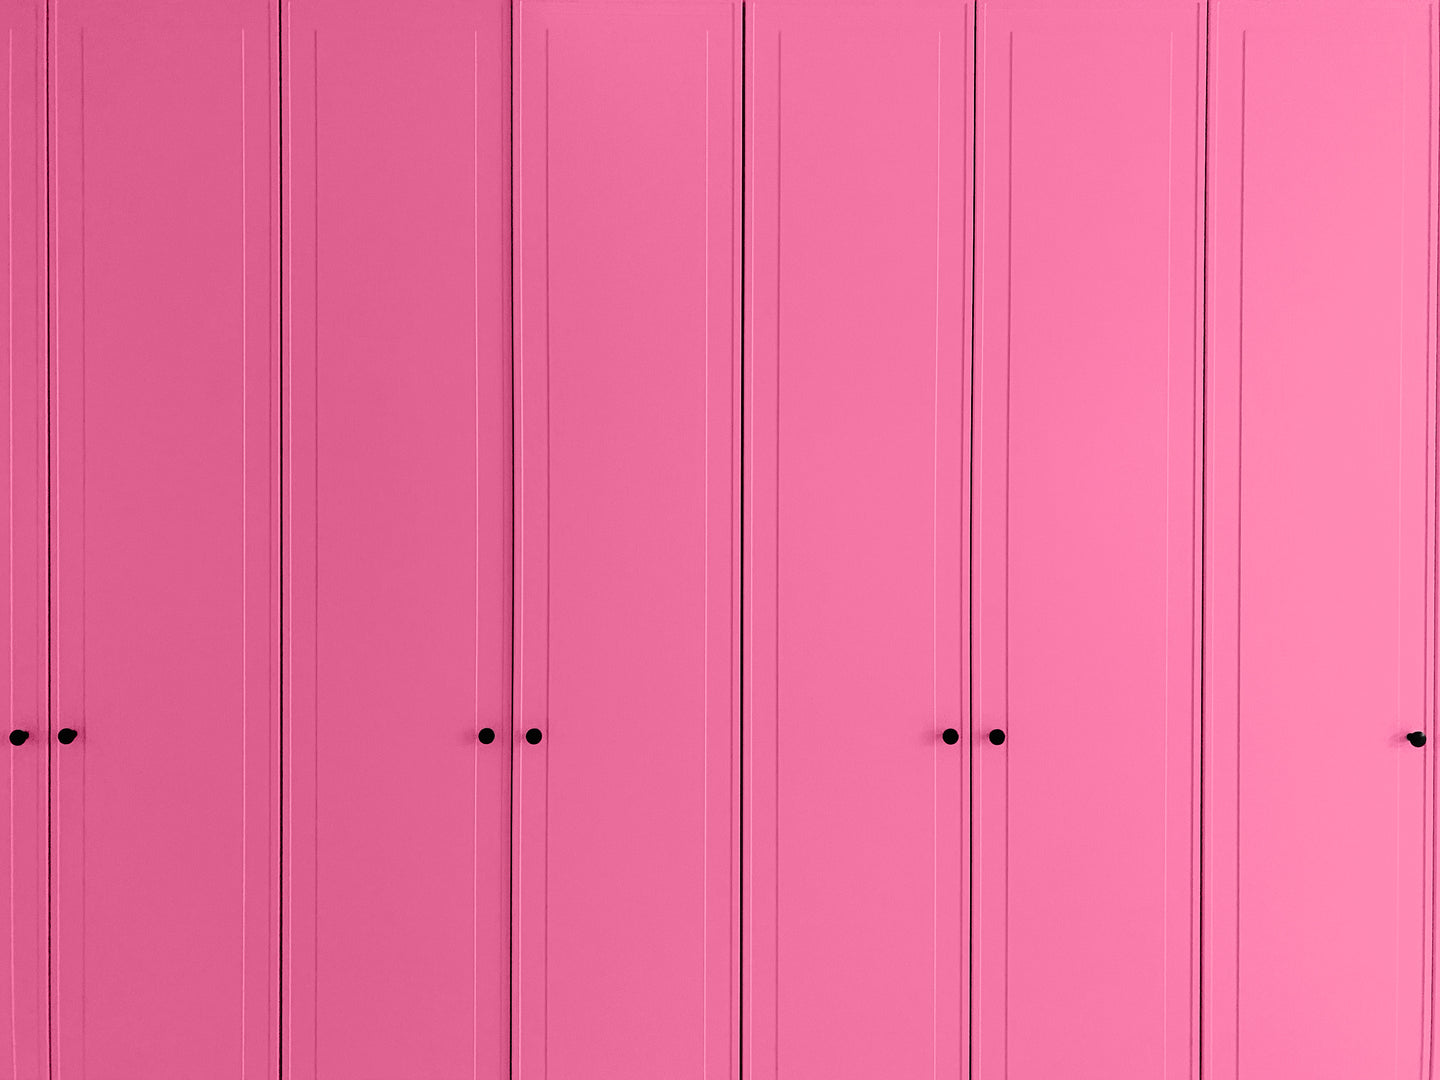 YesColours premium Passionate Pink paint sample (60ml) pre-order Dulux Paint, Coat Paint, Lick Paint, Edward Bulmer, Passionate Passionate Pink Pink Red / Pink Sample